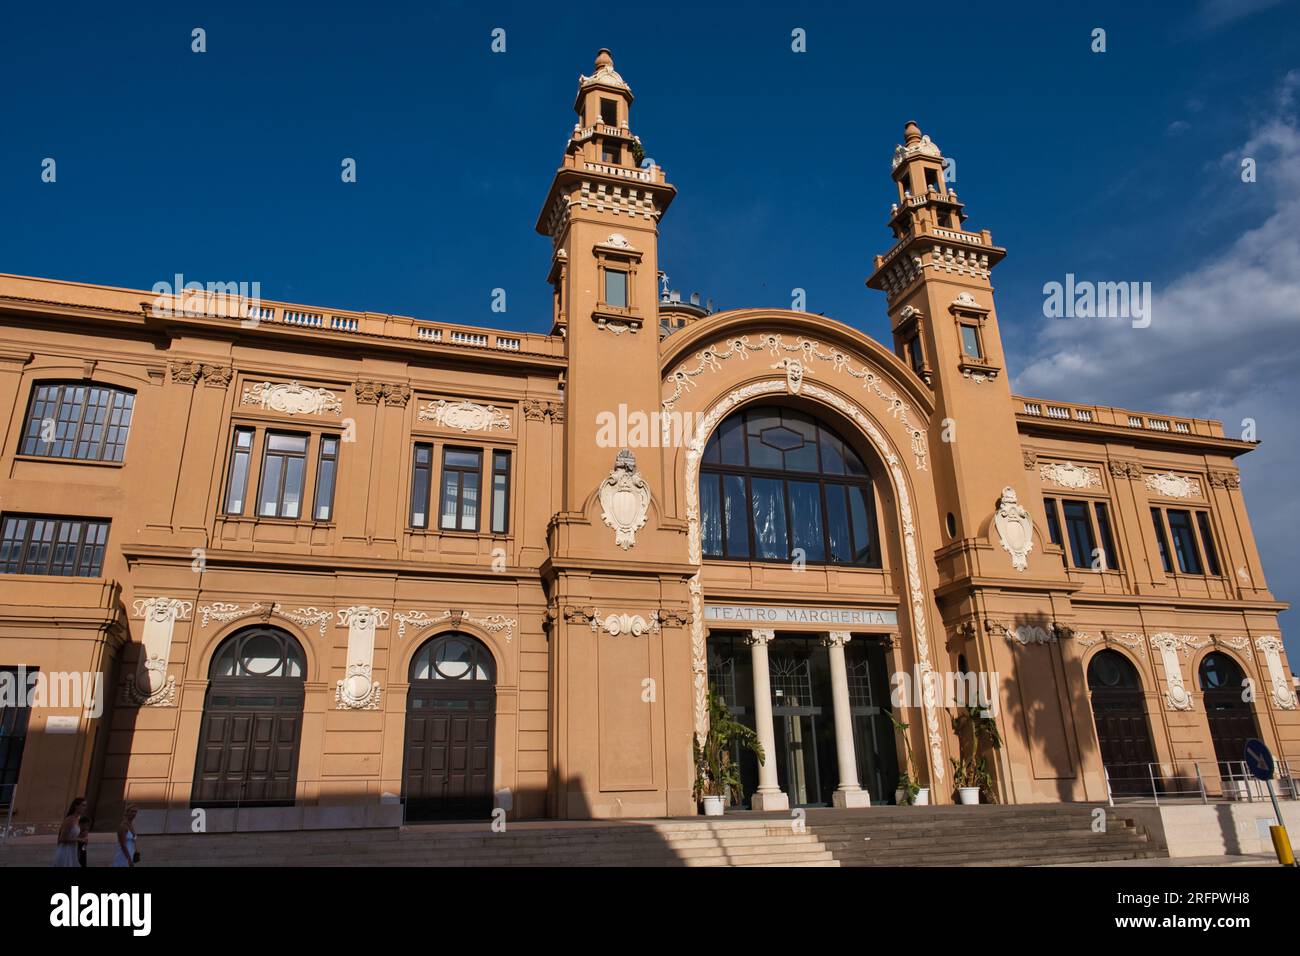 Vista esterna dell'edificio del teatro Margherita di Bari Foto Stock